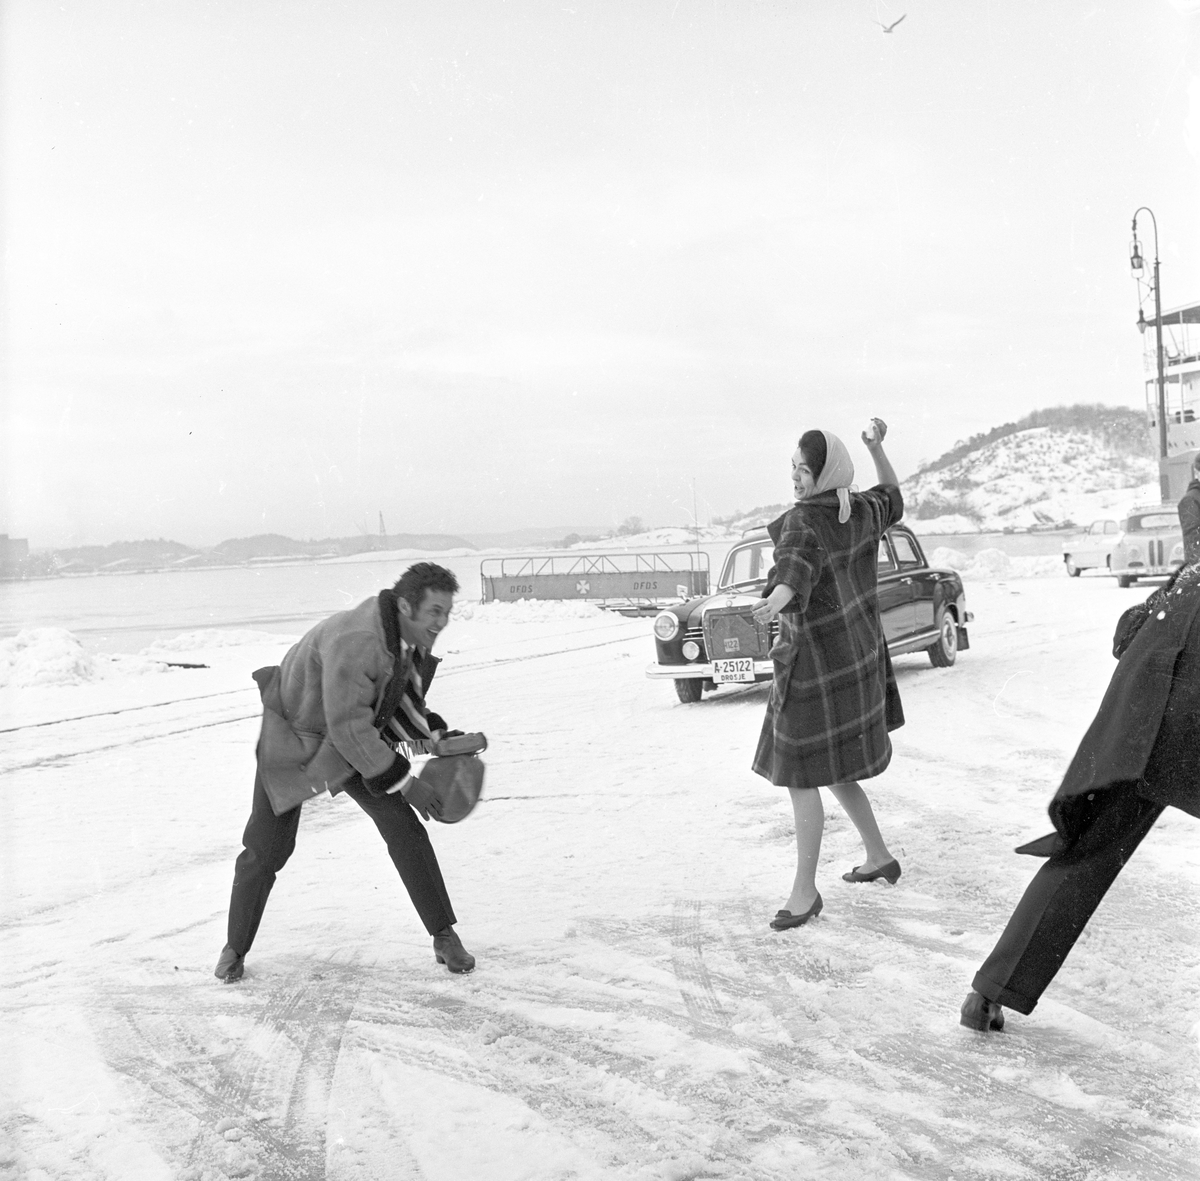 Skuespillere fra "West Side Story" i Oslo ute i snøen. Fotografert 04.04.1962